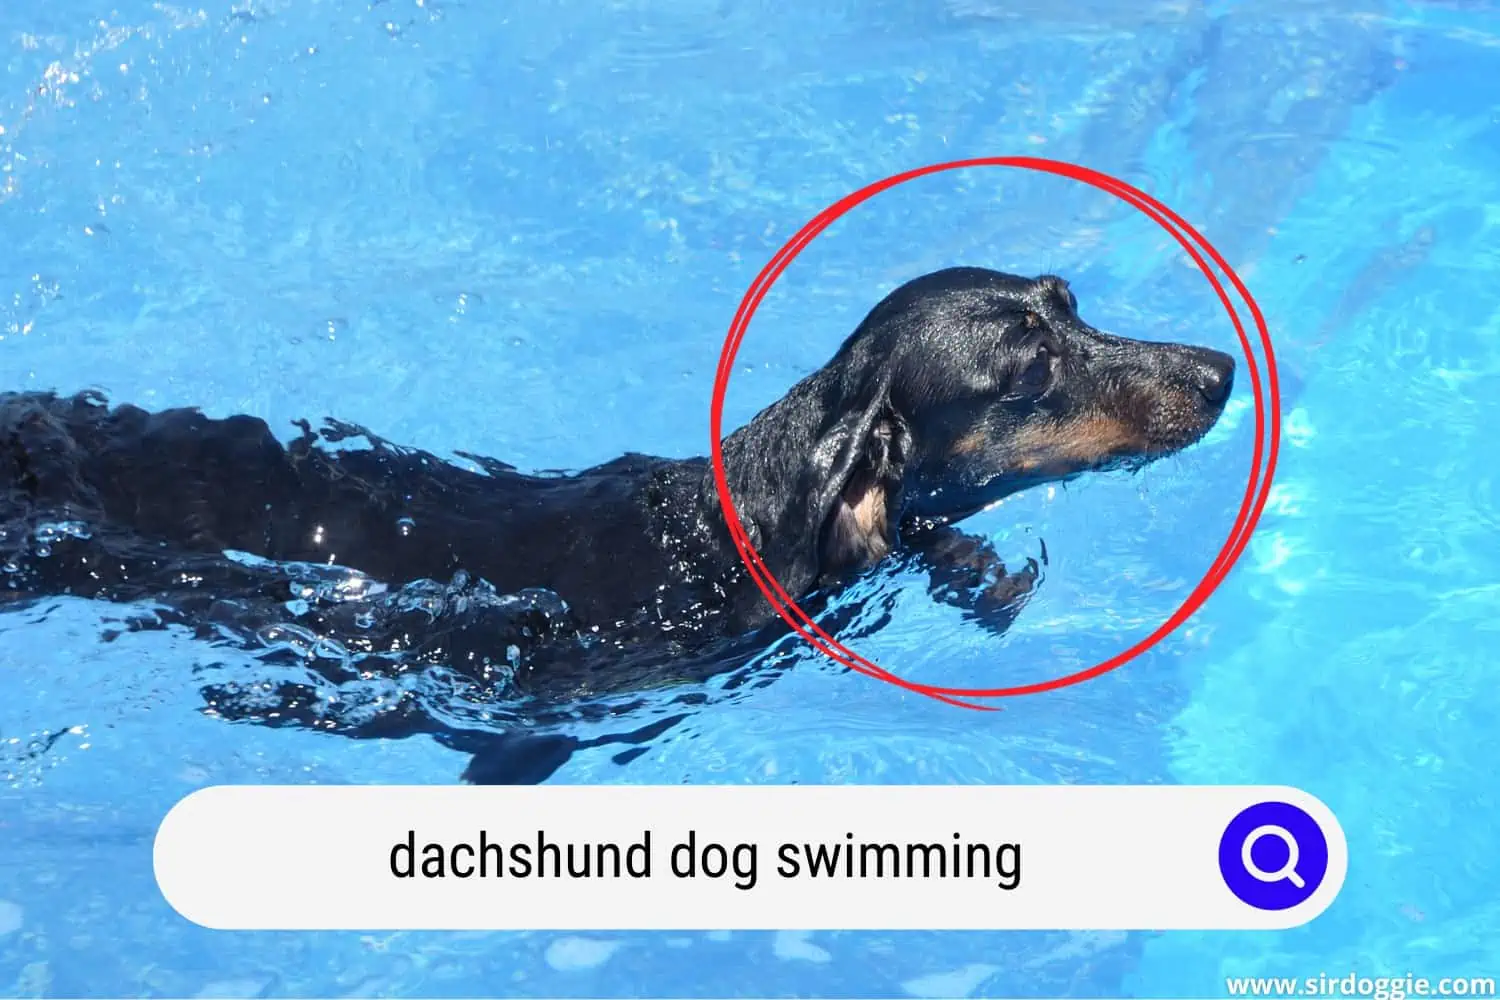 Dachshund dog swimming